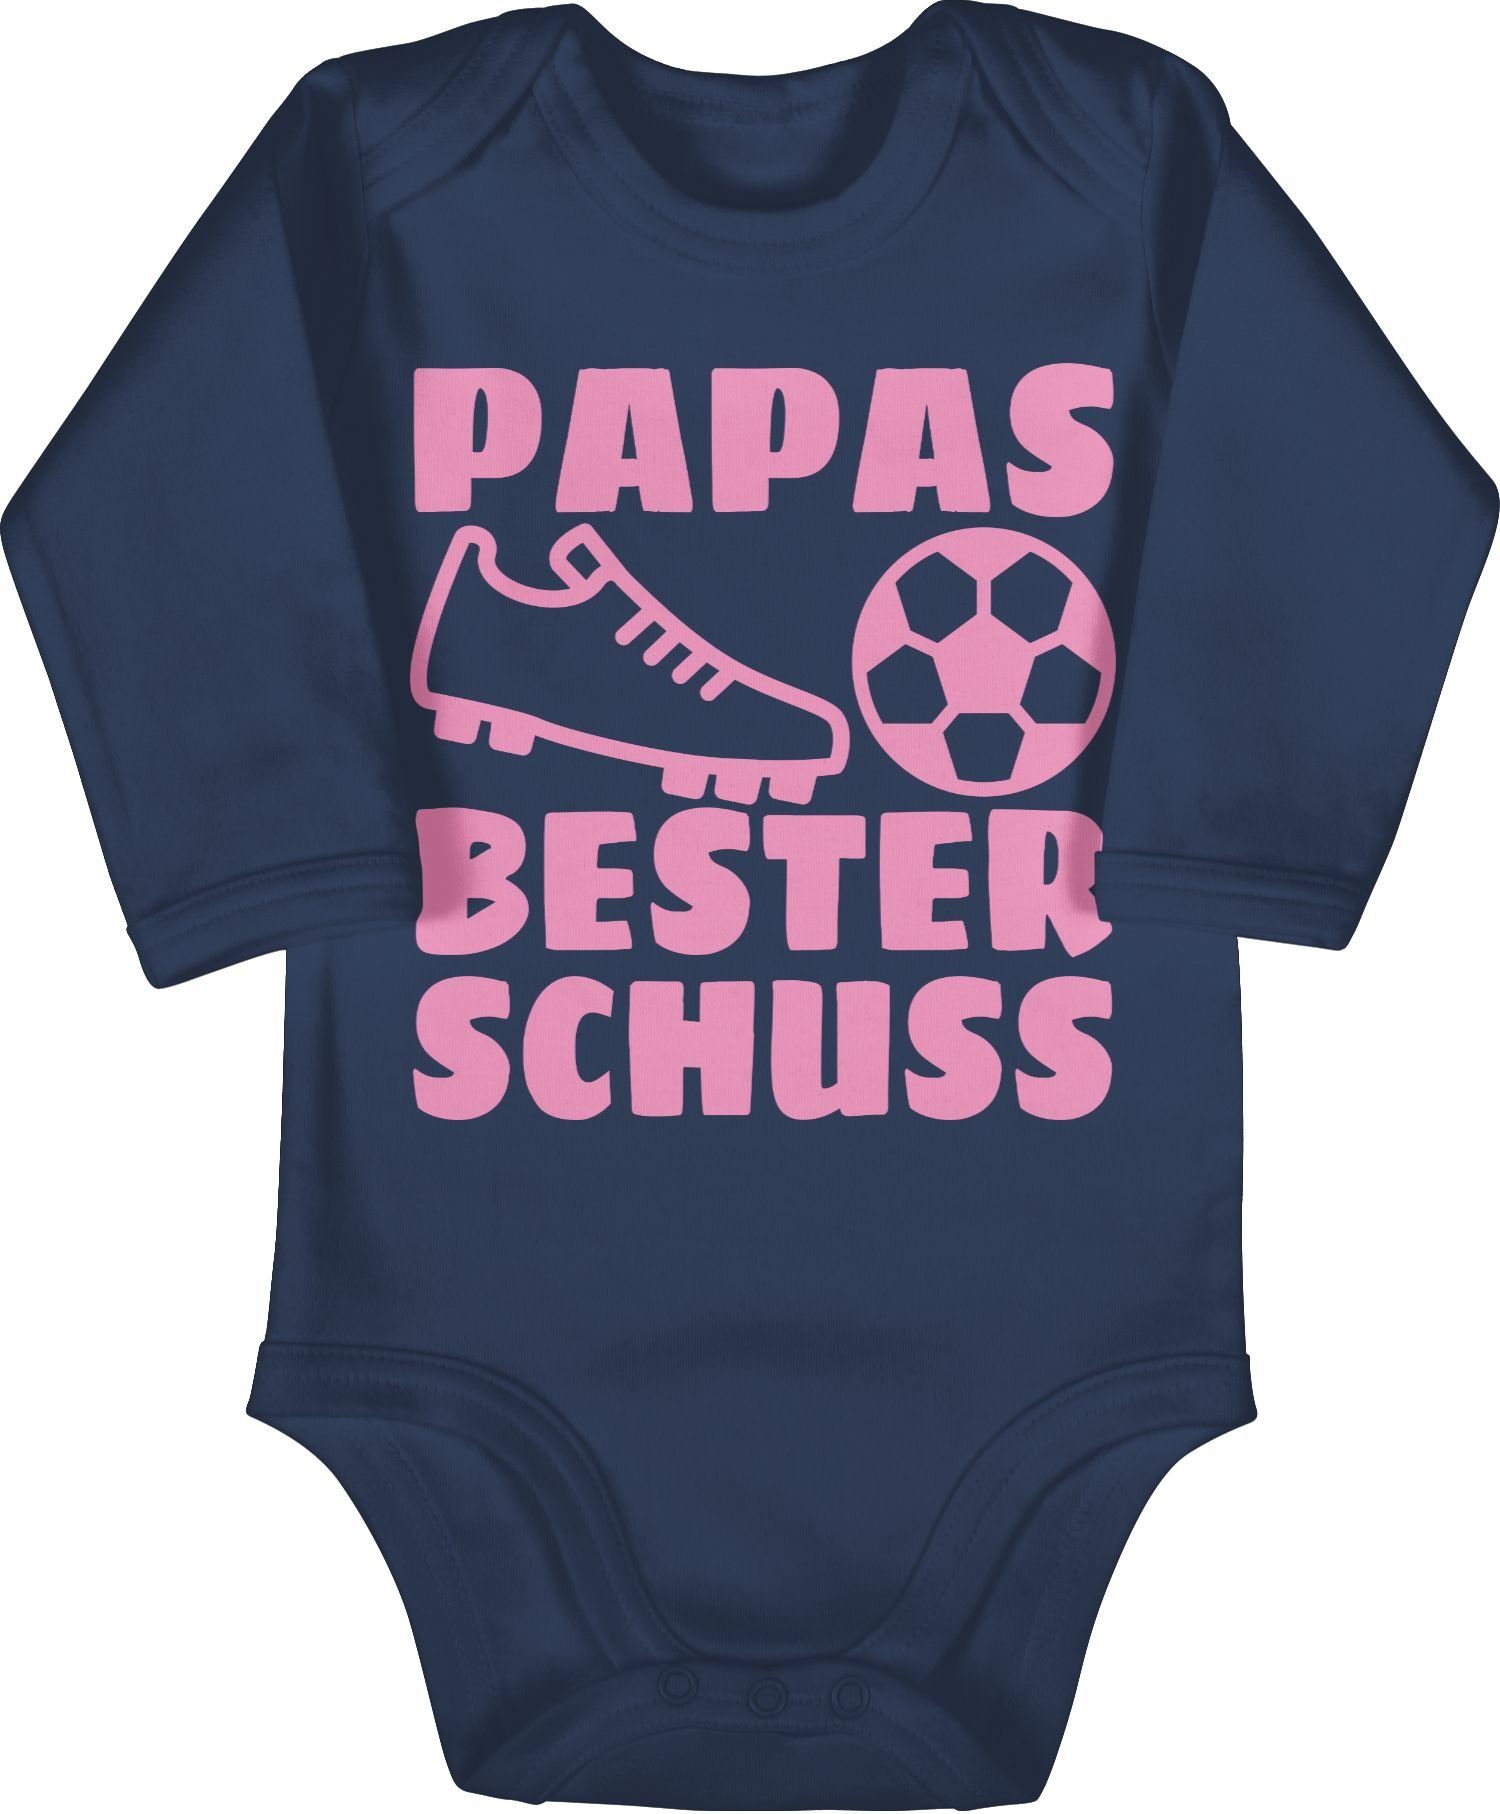 Shirtracer Shirtbody Papas Treffer Baby rosa Geschenk Vatertag bester mit 1 Fussball Blau - Navy